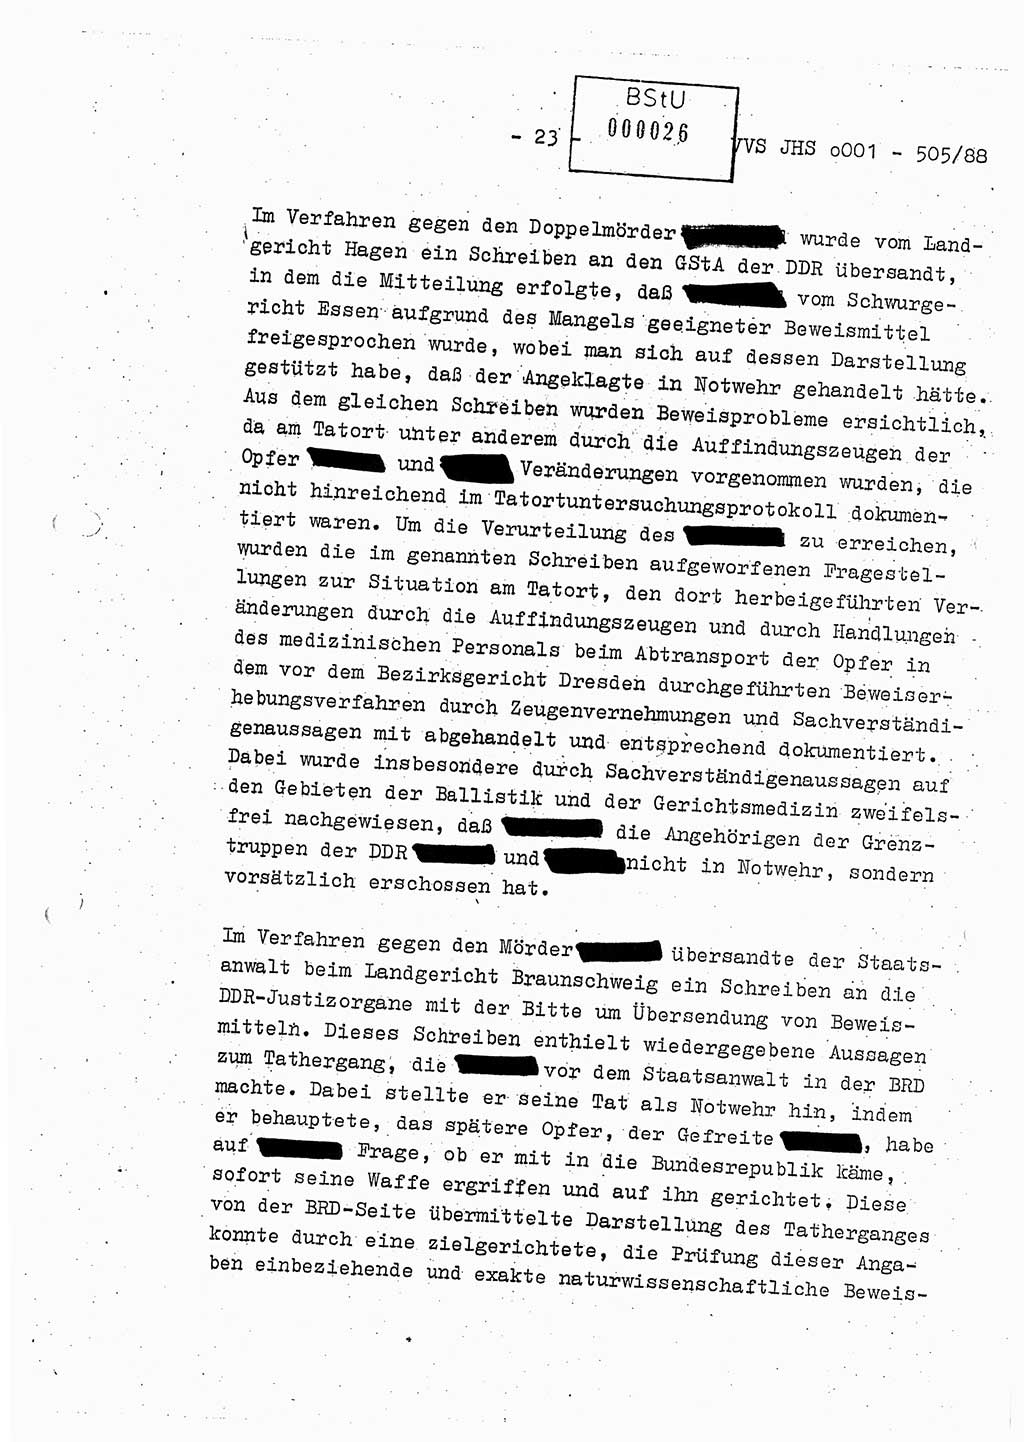 Diplomarbeit Leutnant Frank Schulze (HA Ⅸ/9), Ministerium für Staatssicherheit (MfS) [Deutsche Demokratische Republik (DDR)], Juristische Hochschule (JHS), Vertrauliche Verschlußsache (VVS) o001-505/88, Potsdam 1988, Seite 23 (Dipl.-Arb. MfS DDR JHS VVS o001-505/88 1988, S. 23)